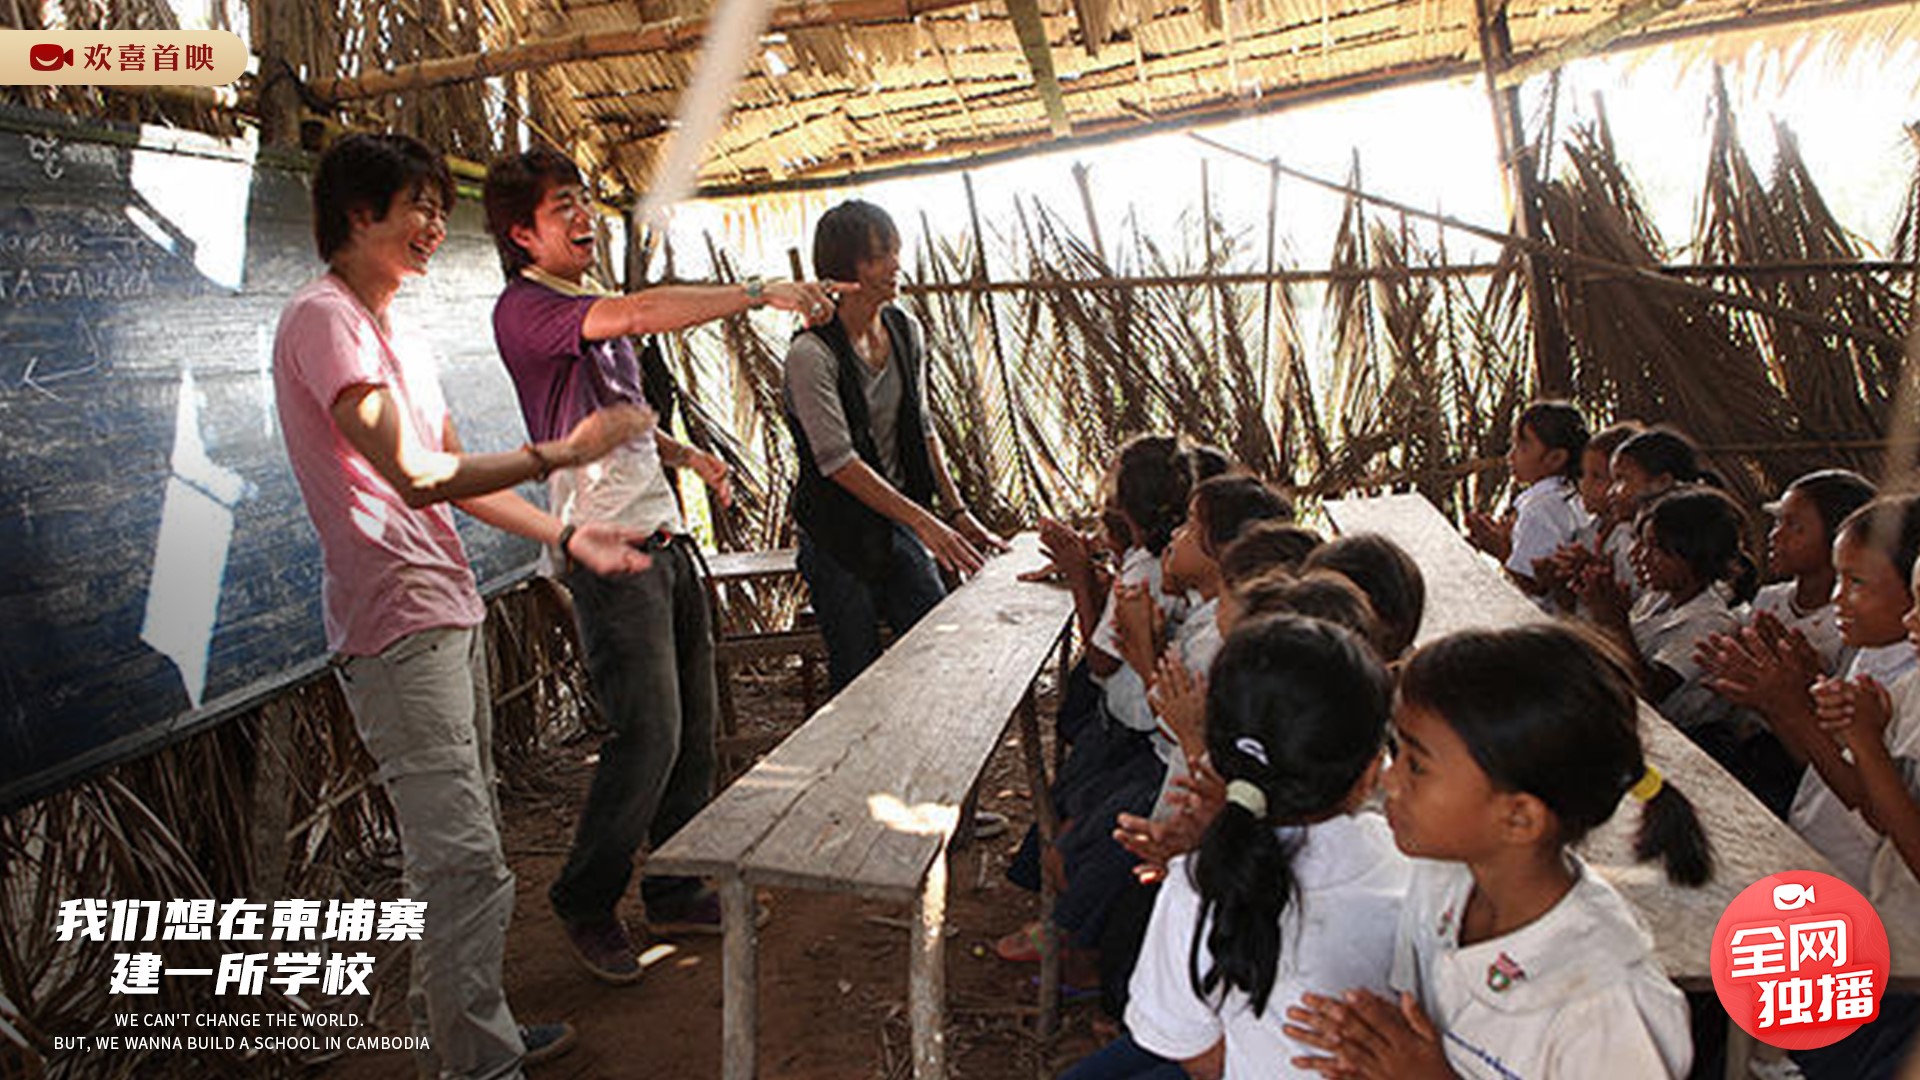 《我们想在柬埔寨建一所学校》剧照3.jpg